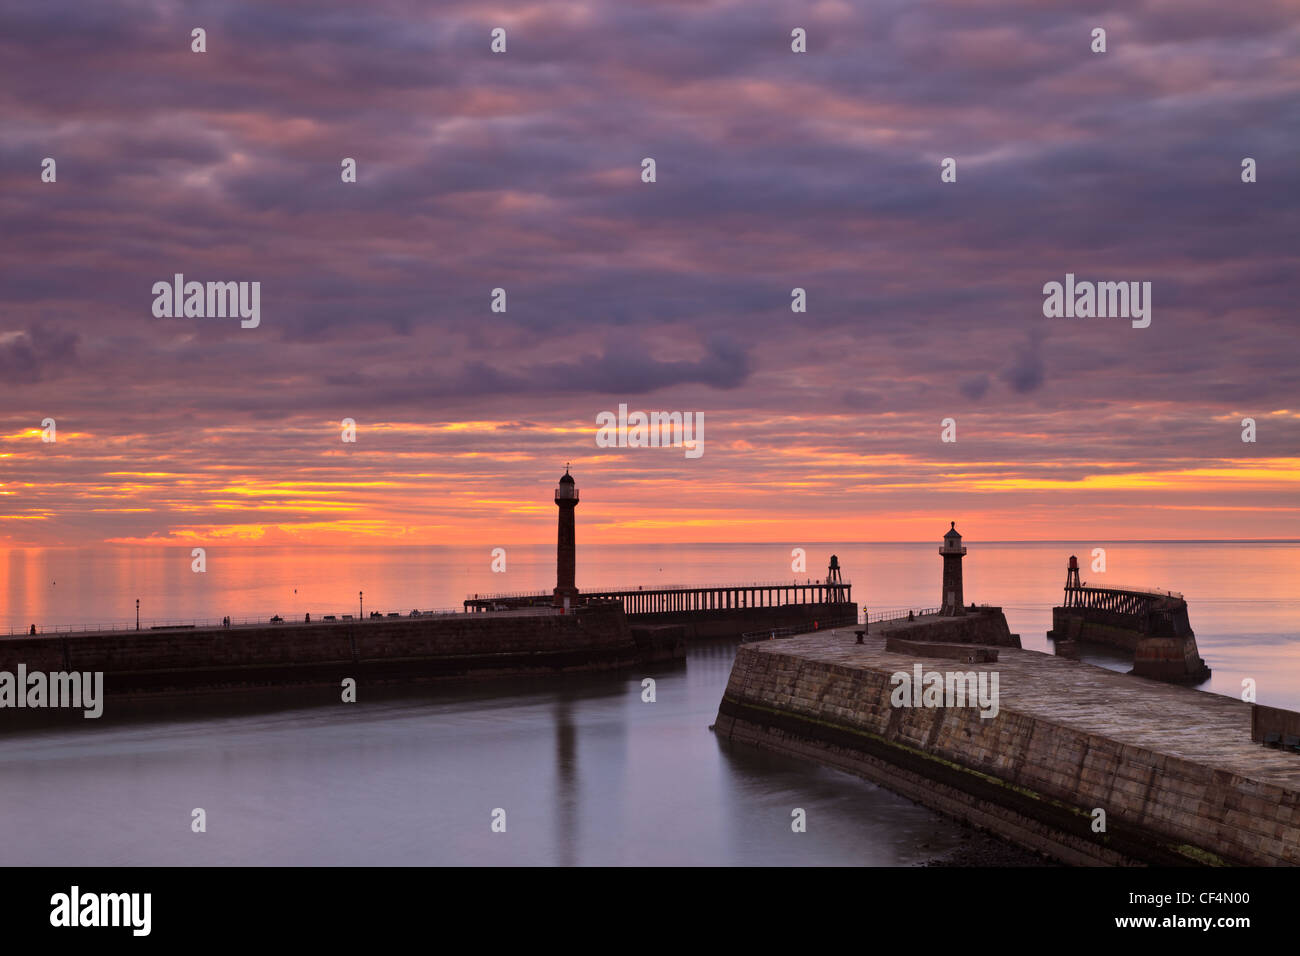 Sonnenuntergang über Whitby West Pier und Leuchtturm Stockfotografie - Alamy